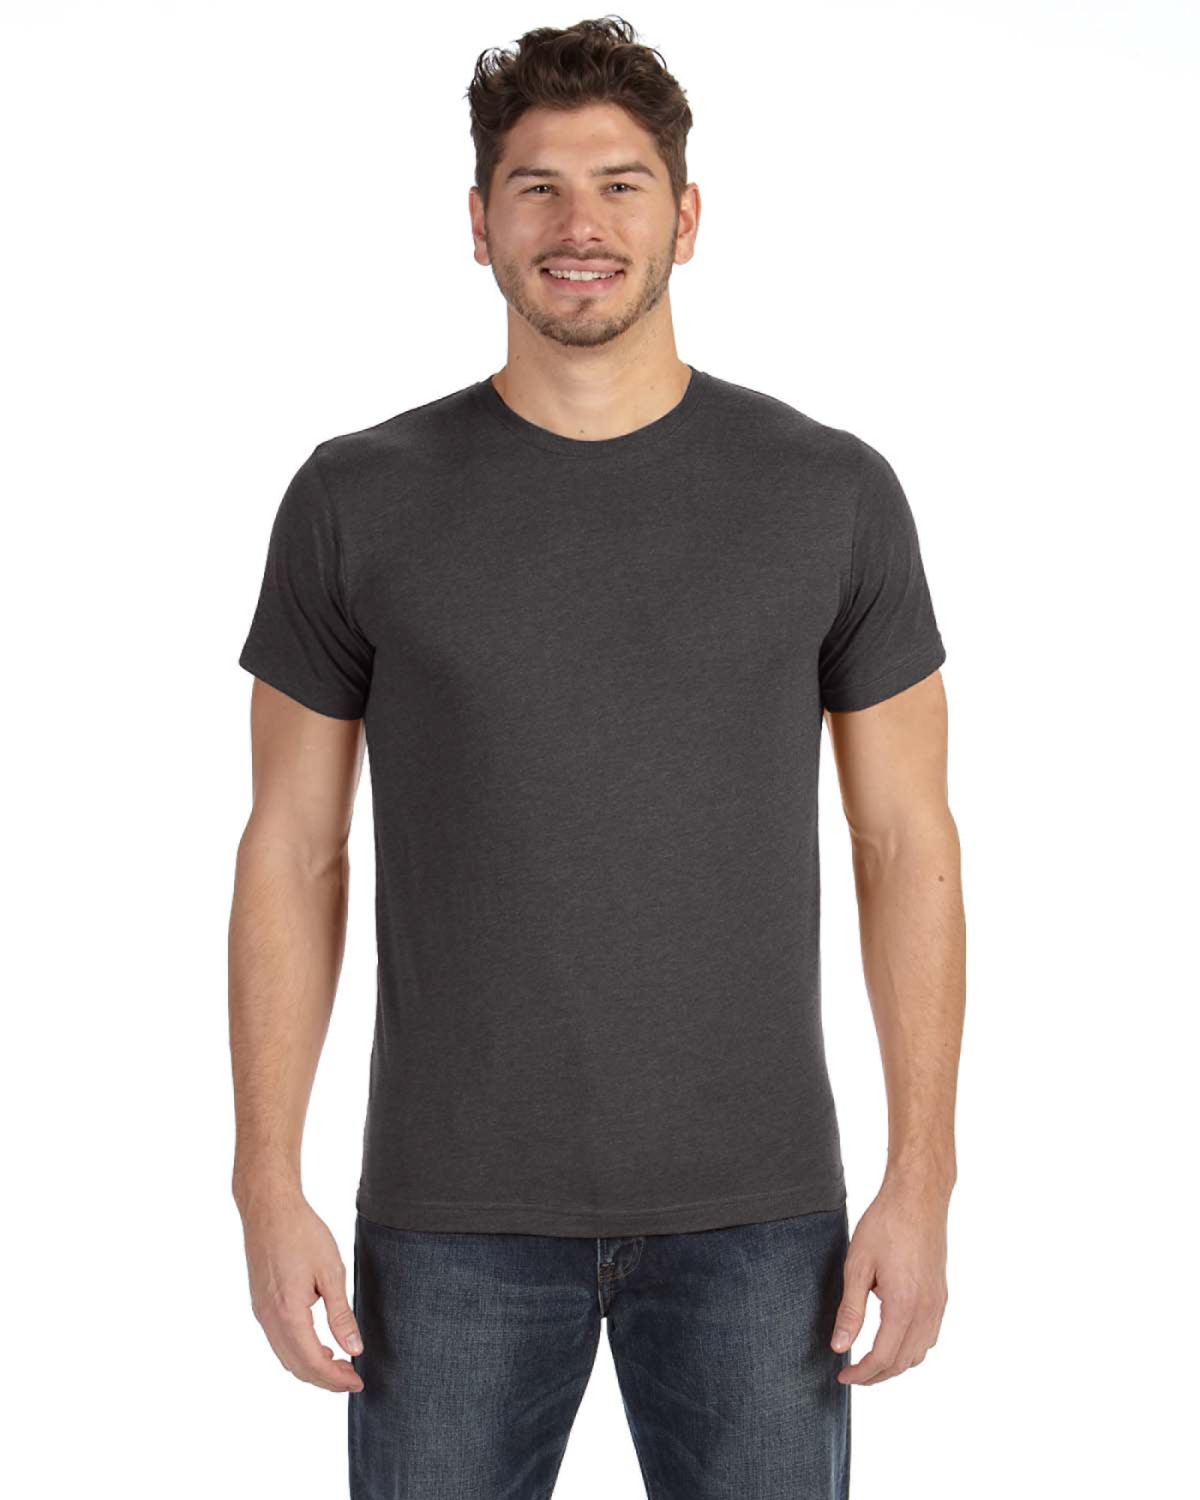 LAT 6901, Men's Fine Jersey T-Shirt